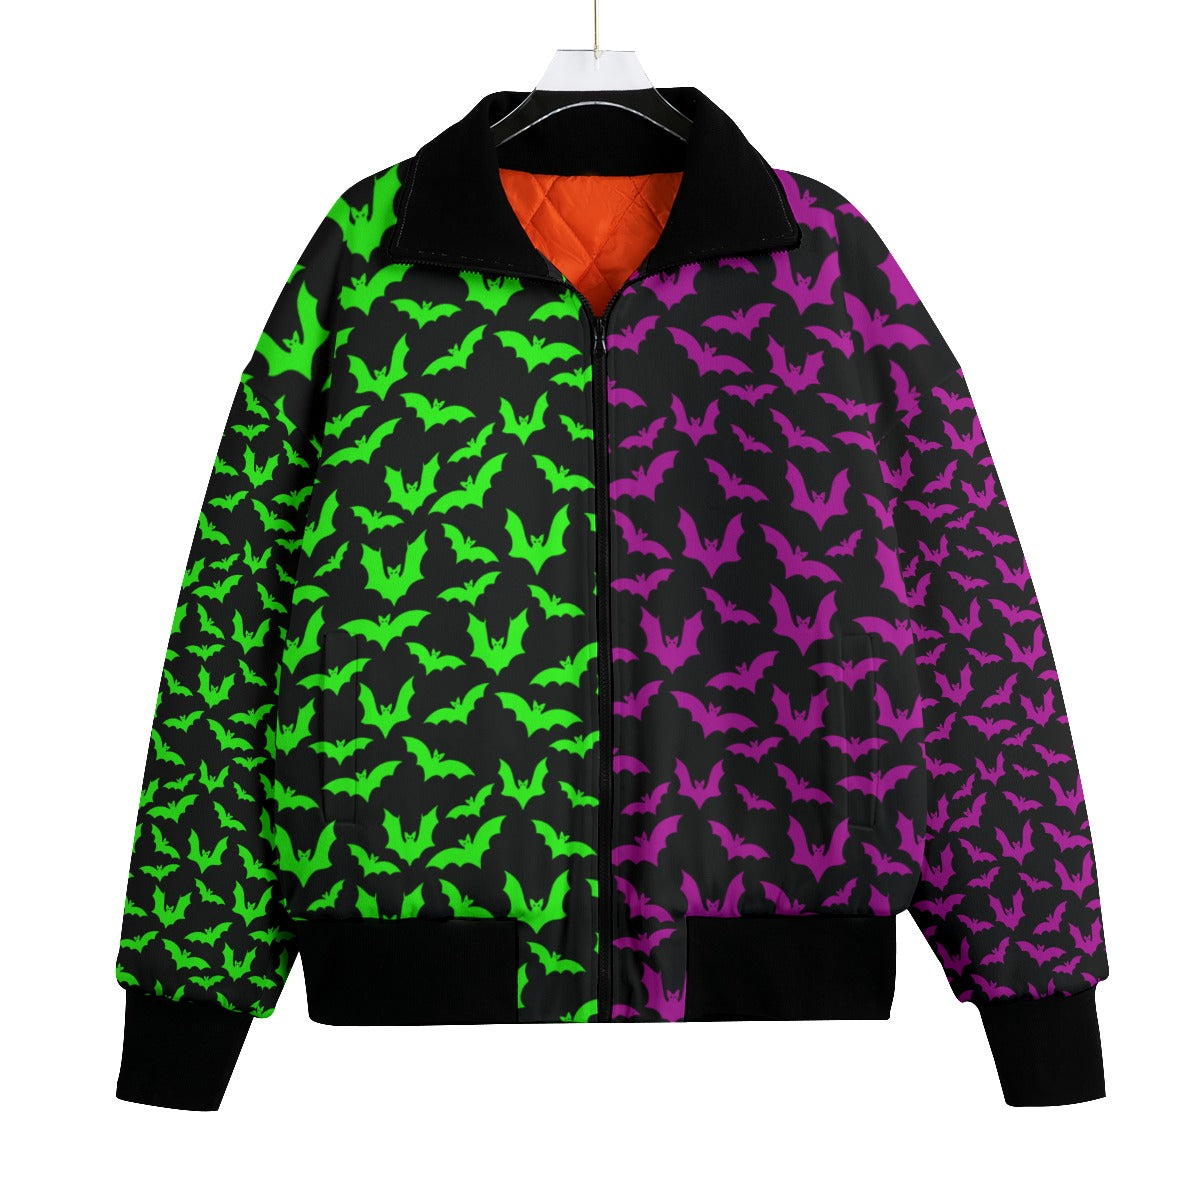 Green & Purple Knitted Fleece Bomber Jacket spookydoll